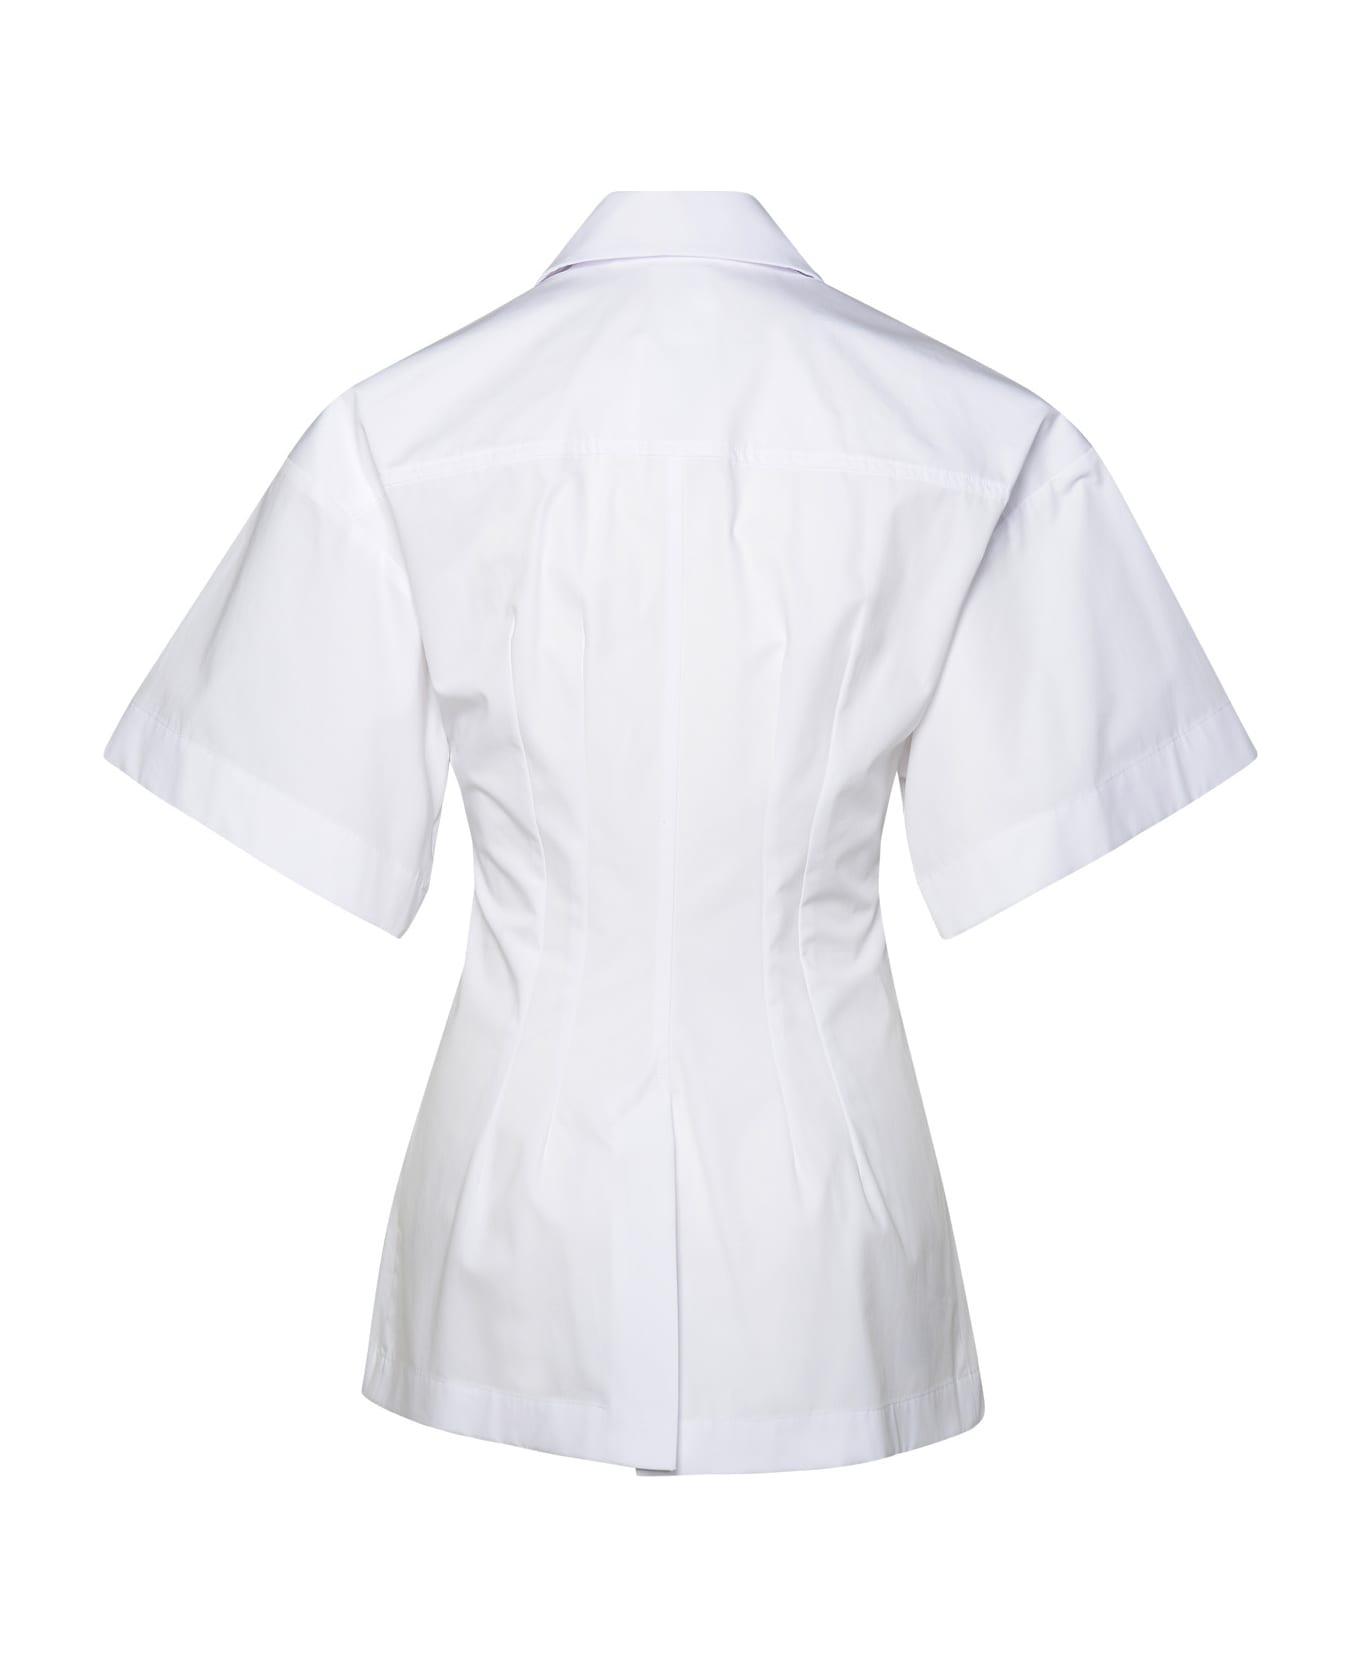 SportMax White Cotton Shirt - White